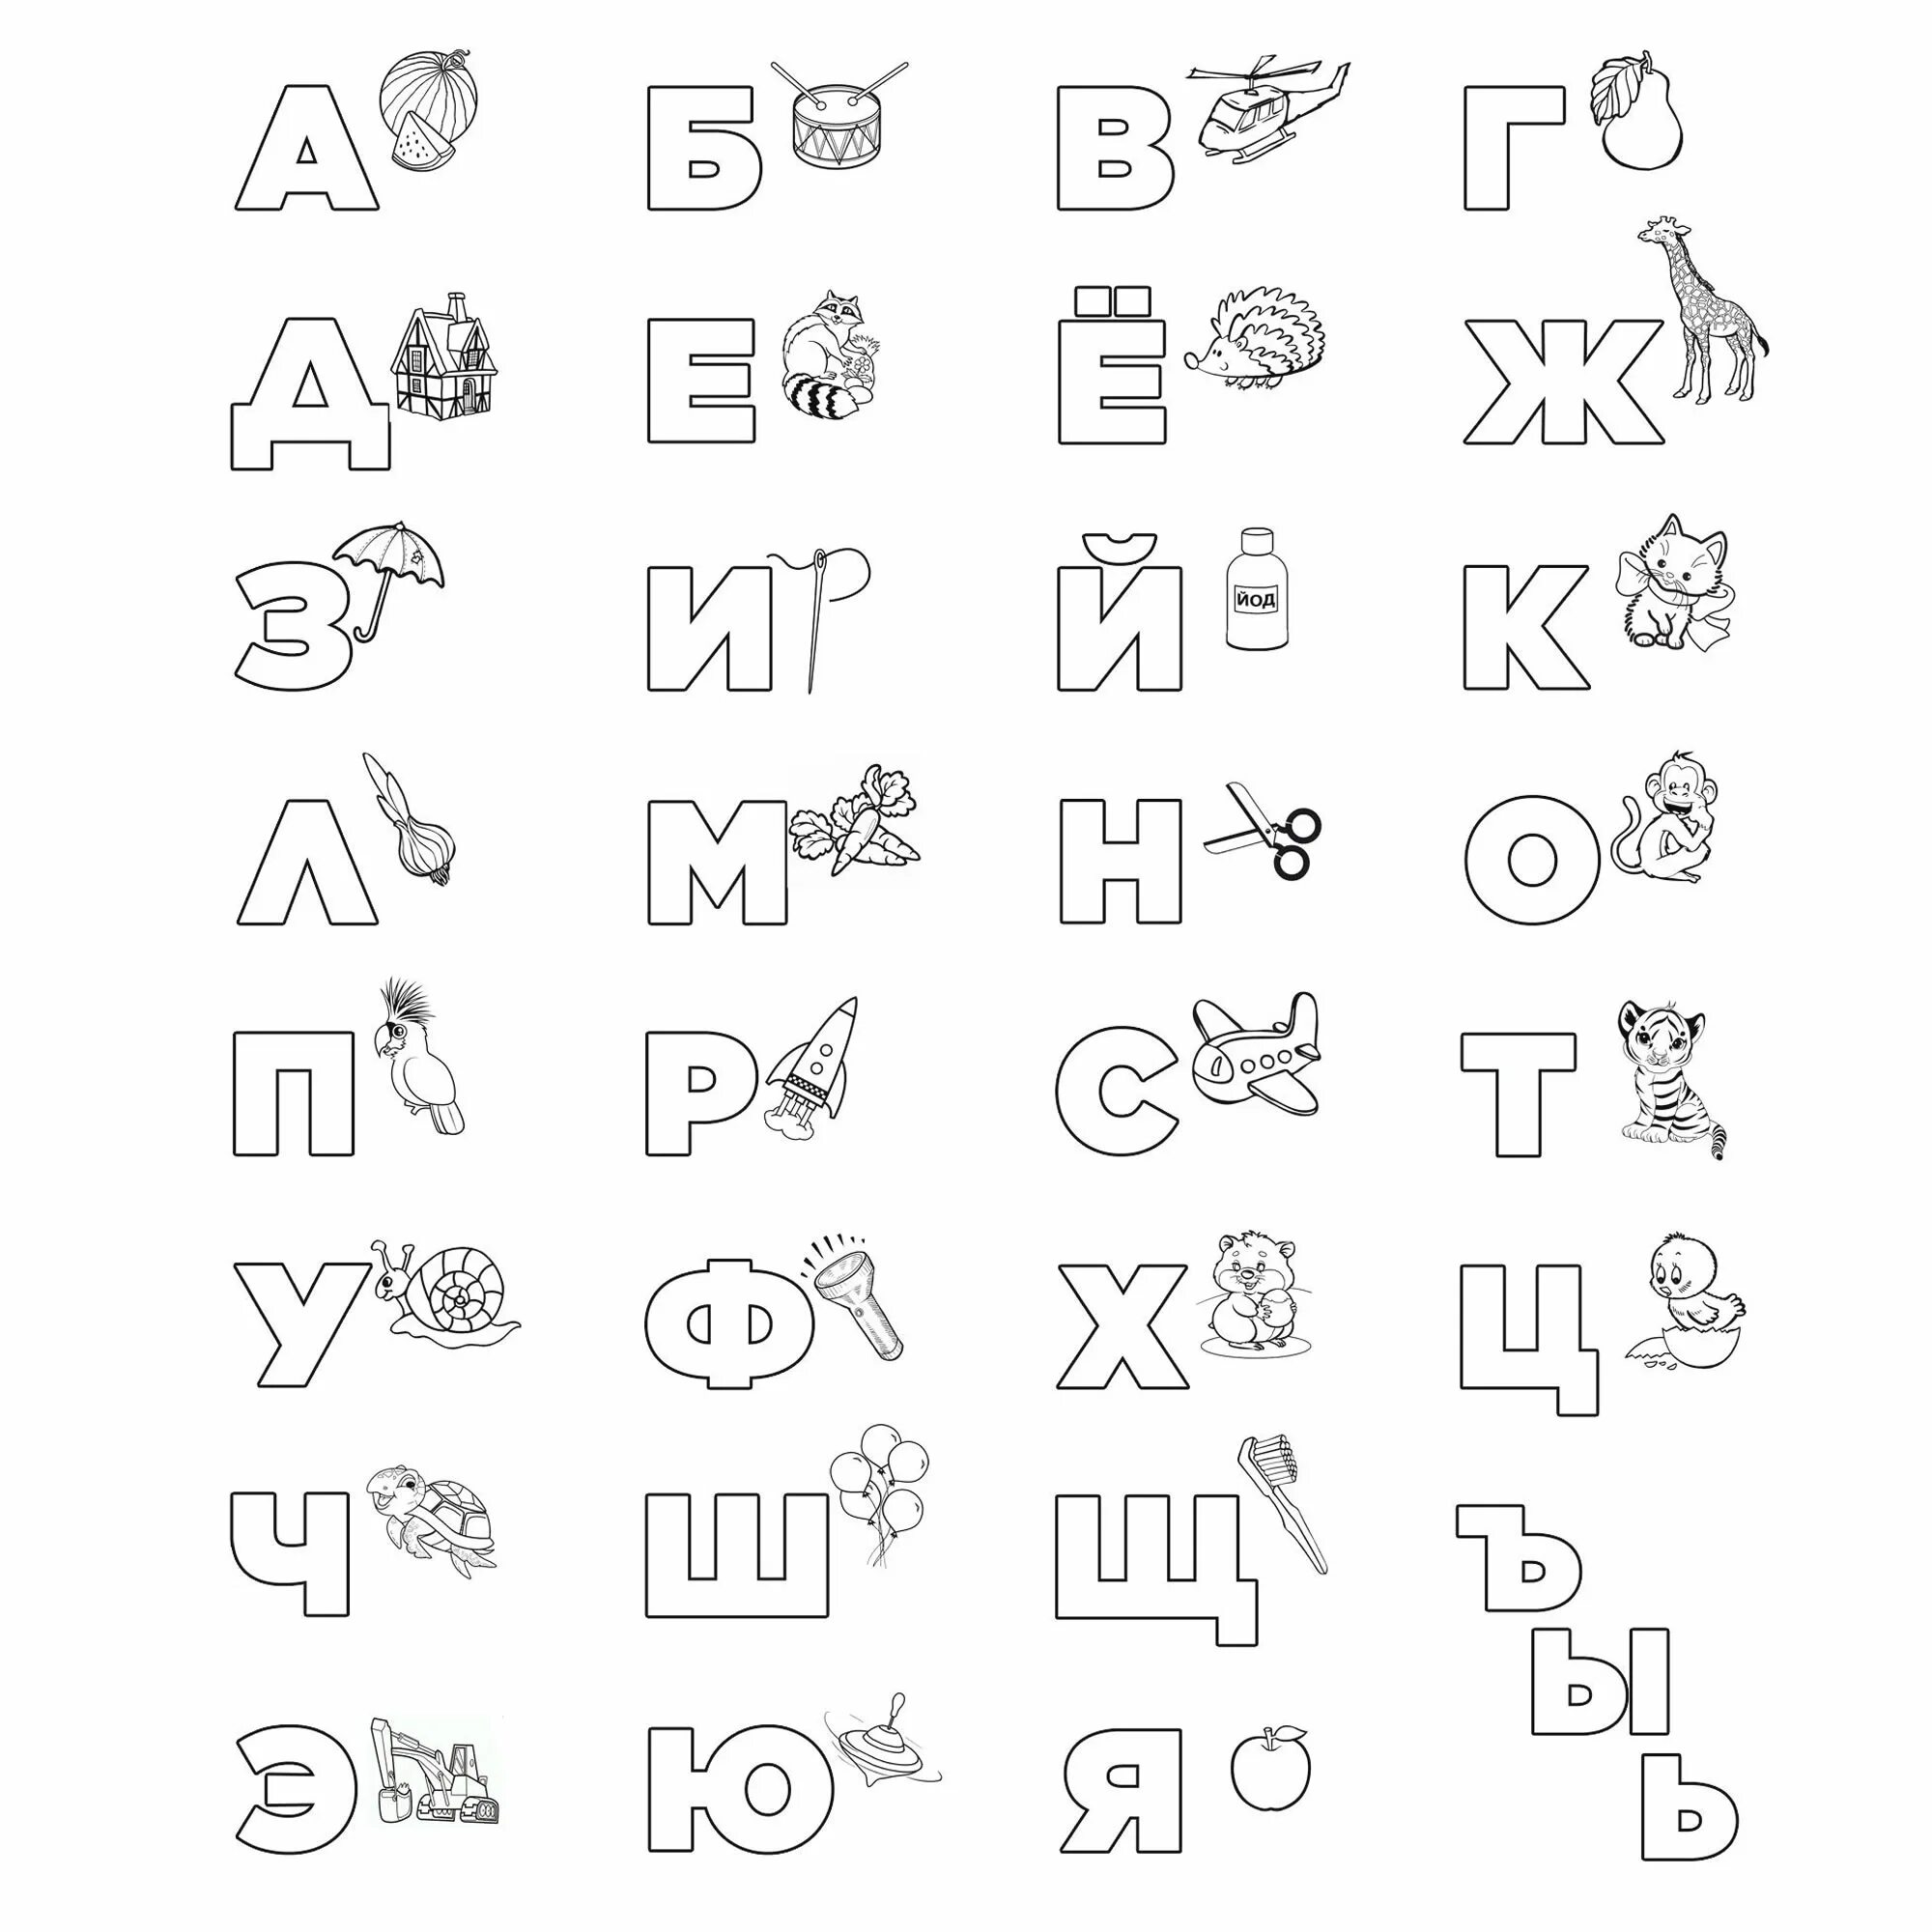 Азбука раскраска в картинках распечатать, раскраска буквы русского алфавита для детей в картинках